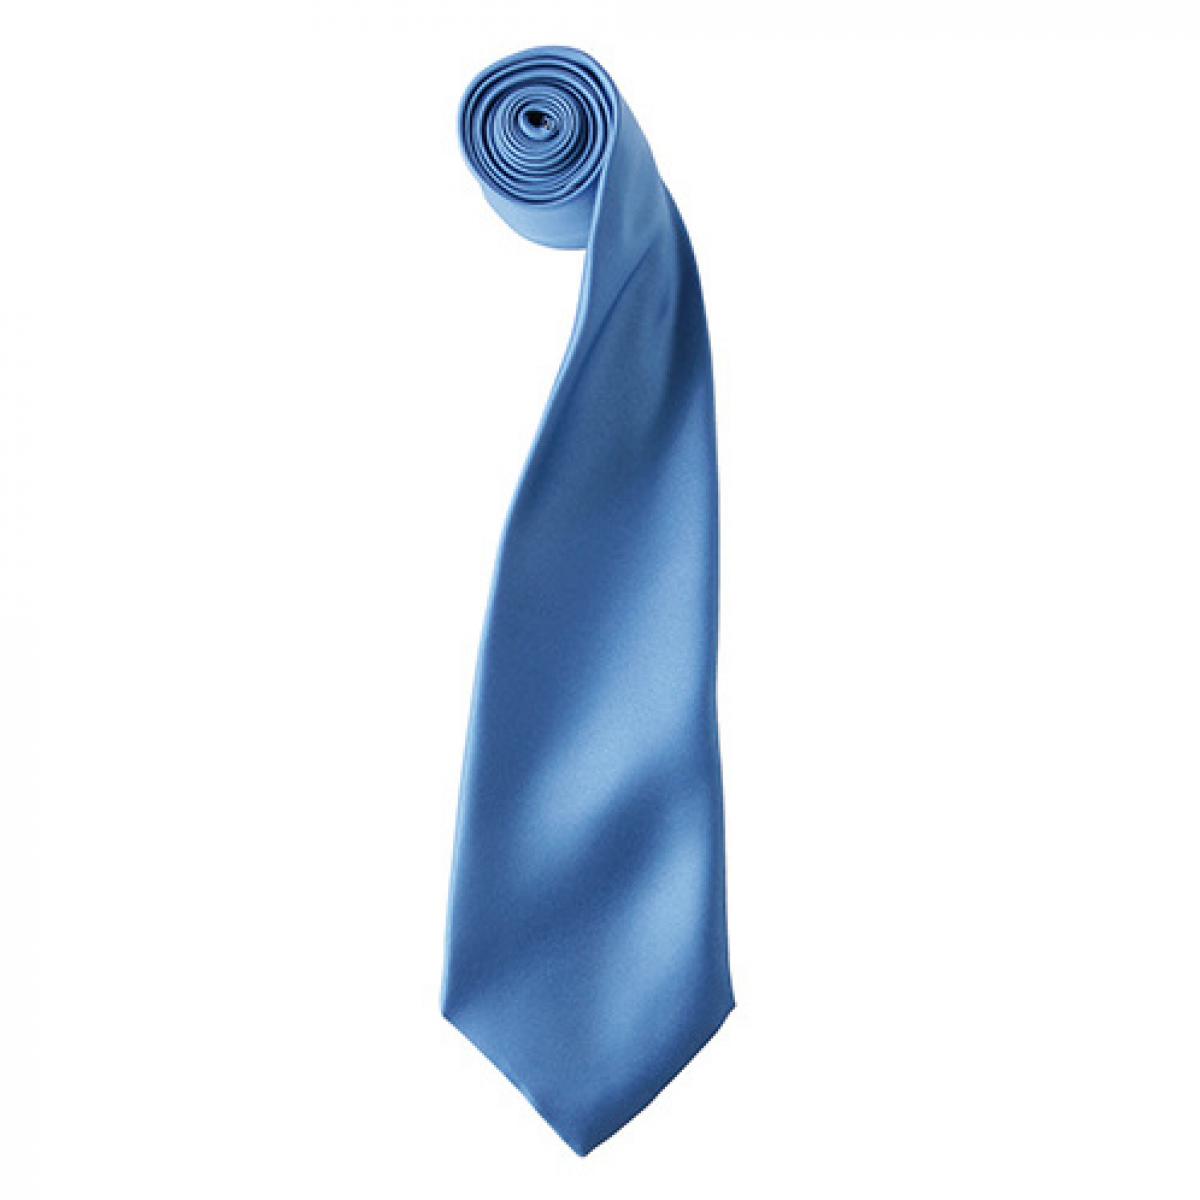 Hersteller: Premier Workwear Herstellernummer: PR750 Artikelbezeichnung: Satin Tie ´Colours´ / 144 x 8,5 cm Farbe: Midblue (ca. Pantone 2718)